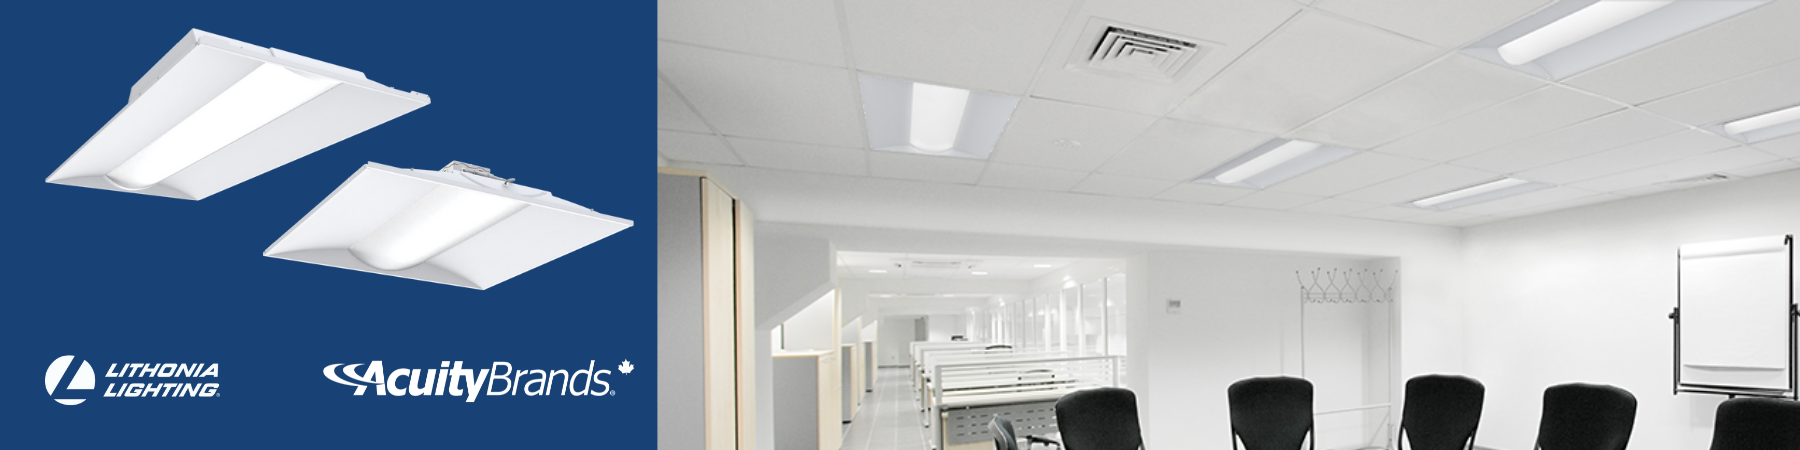 image d'un bureau équipé avec des lampes lithonia lighting